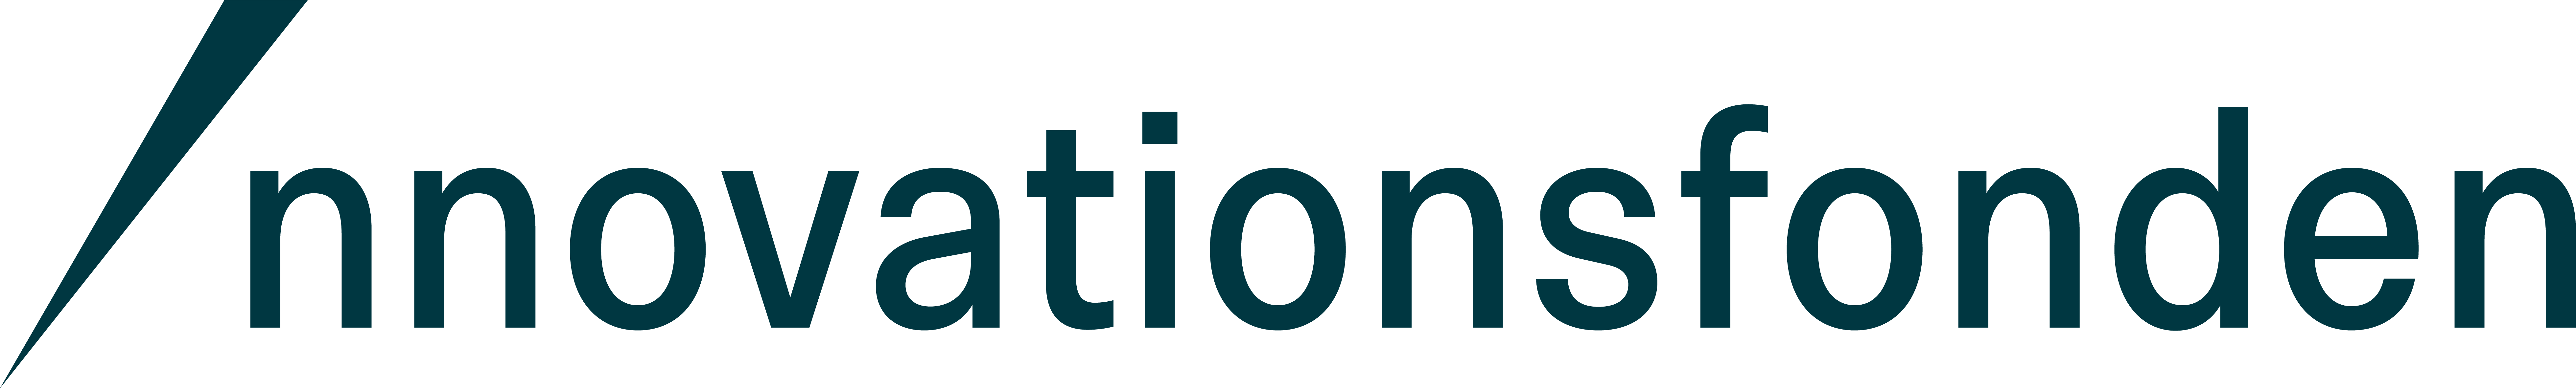 Innovationsfonden Logo